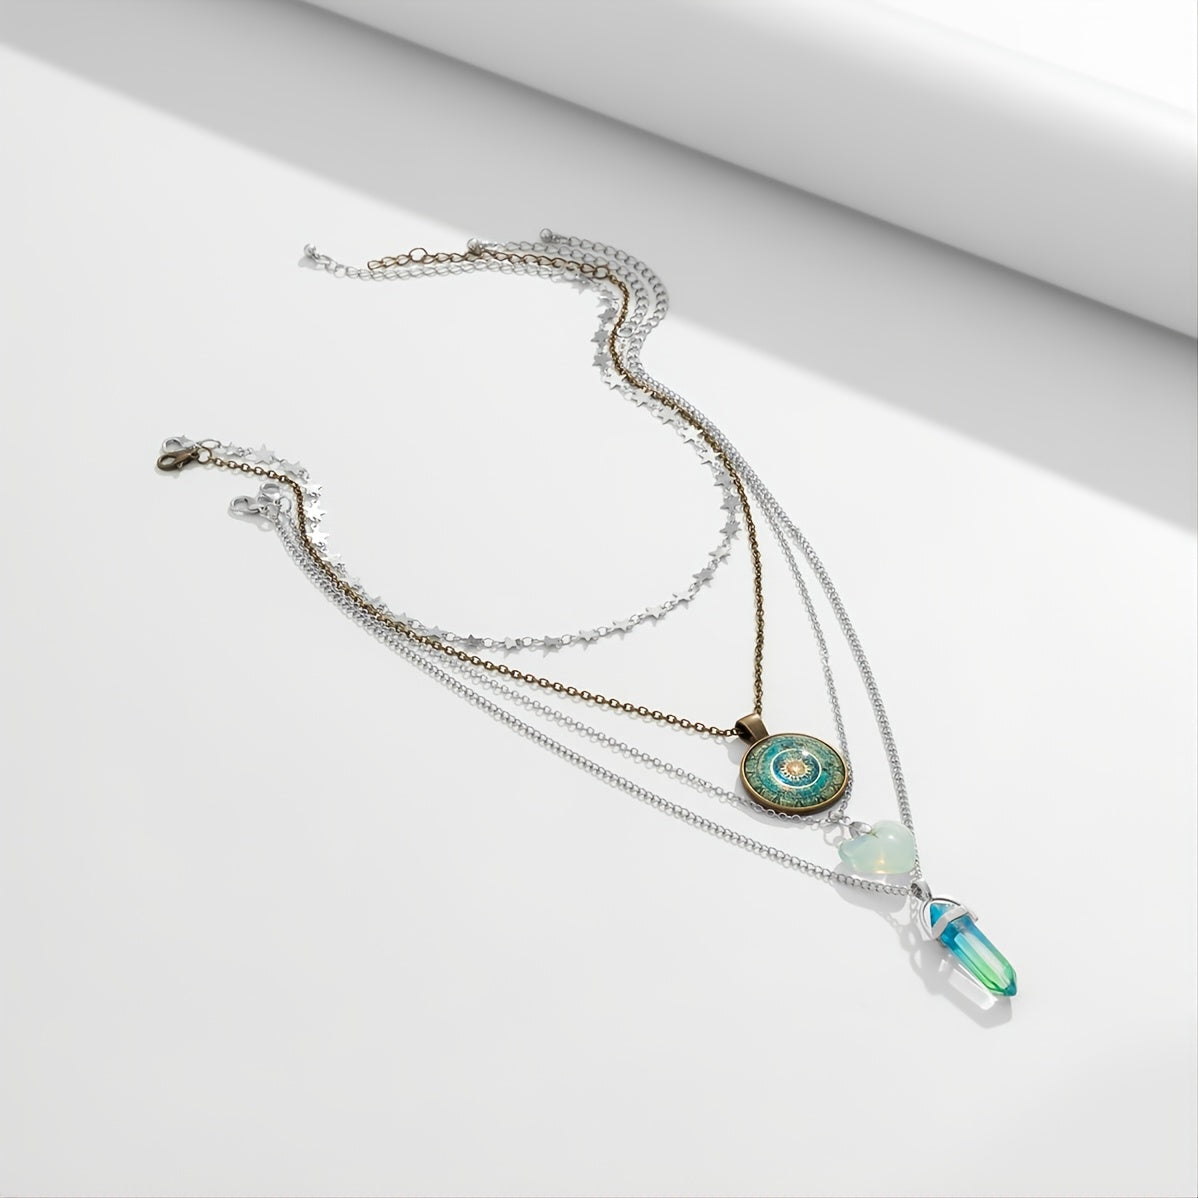 Gorgeous Vintage Heart Crystal Pendant Necklace Set - 4 Pieces!